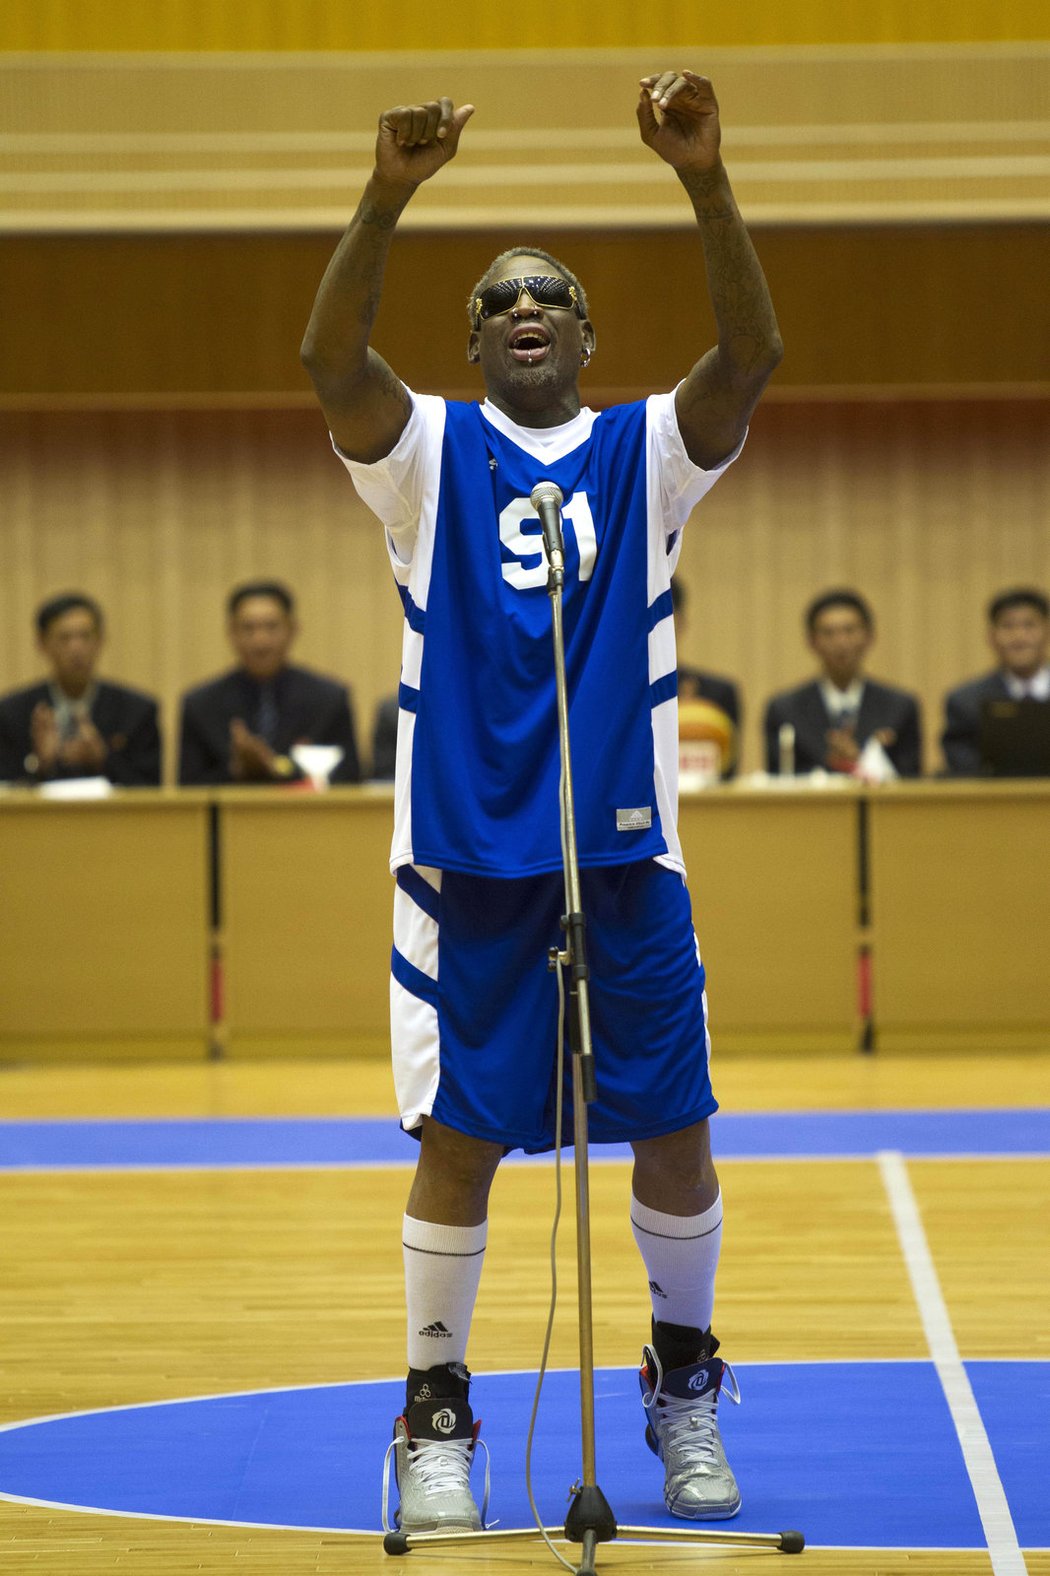 Dennis Rodman zazpíval při návštěvě v KLDR vůdci Kim Čong-unovi k narozeninám píseň Happy Birthday. Někdejší slavný americký basketbalista již dříve řekl, že utkání je dárkem pro severokorejského diktátora, jehož nazývá svým nejlepším přítelem.